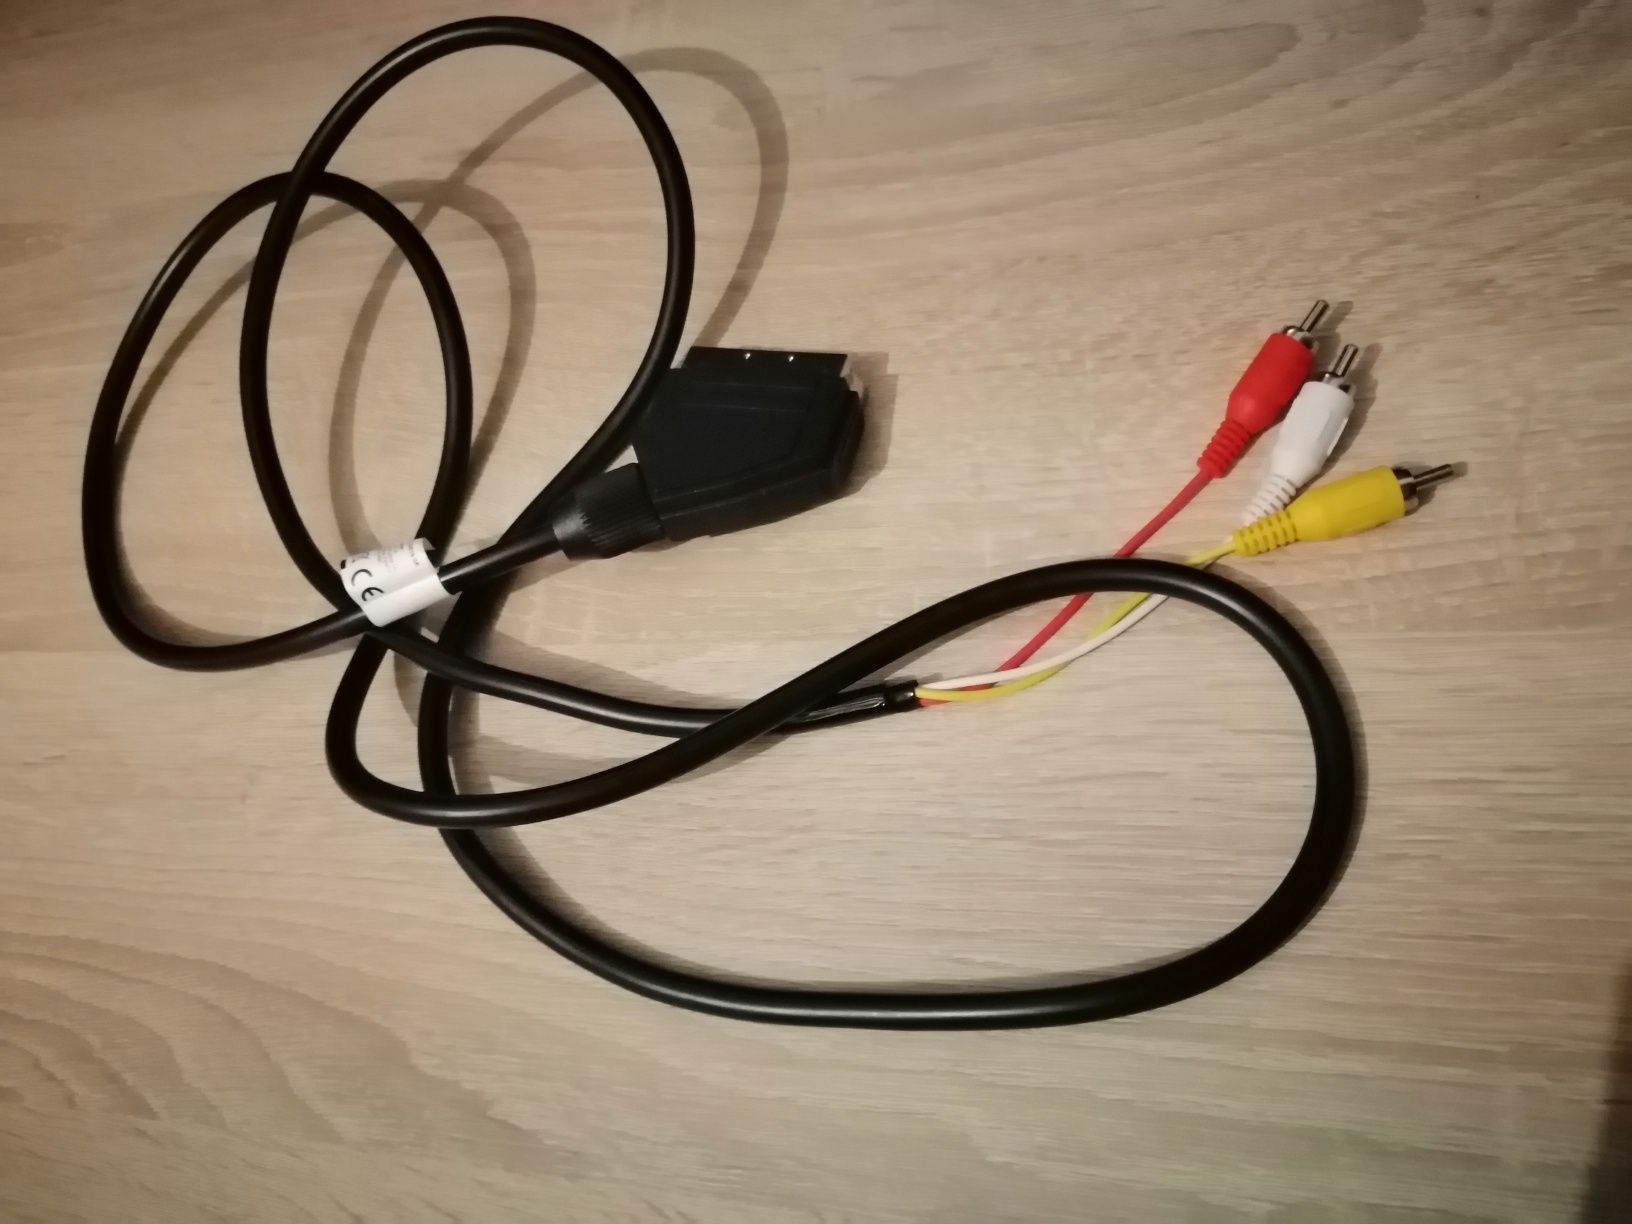 Kabel CINCH (RCA)   SCART (EURO) nieużywane w stanie idealnym.